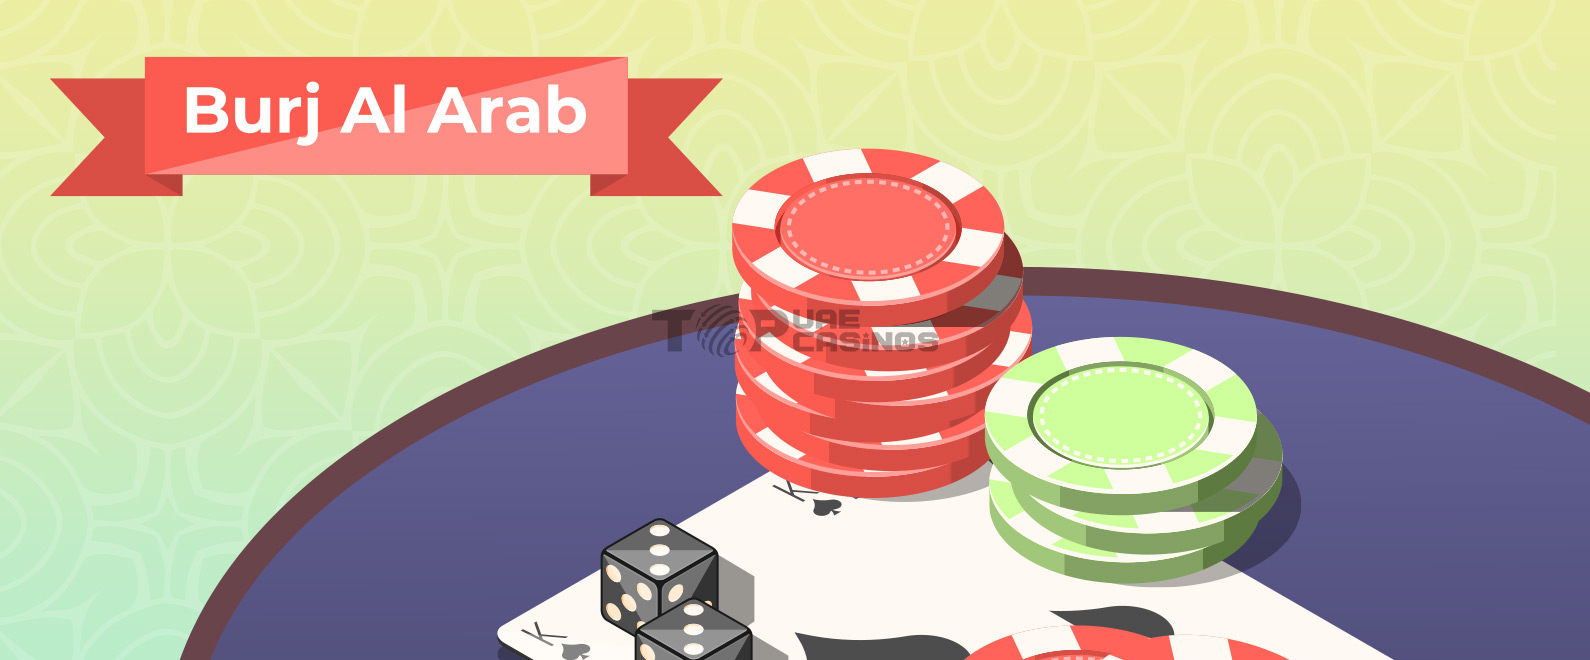 burj al arab casino